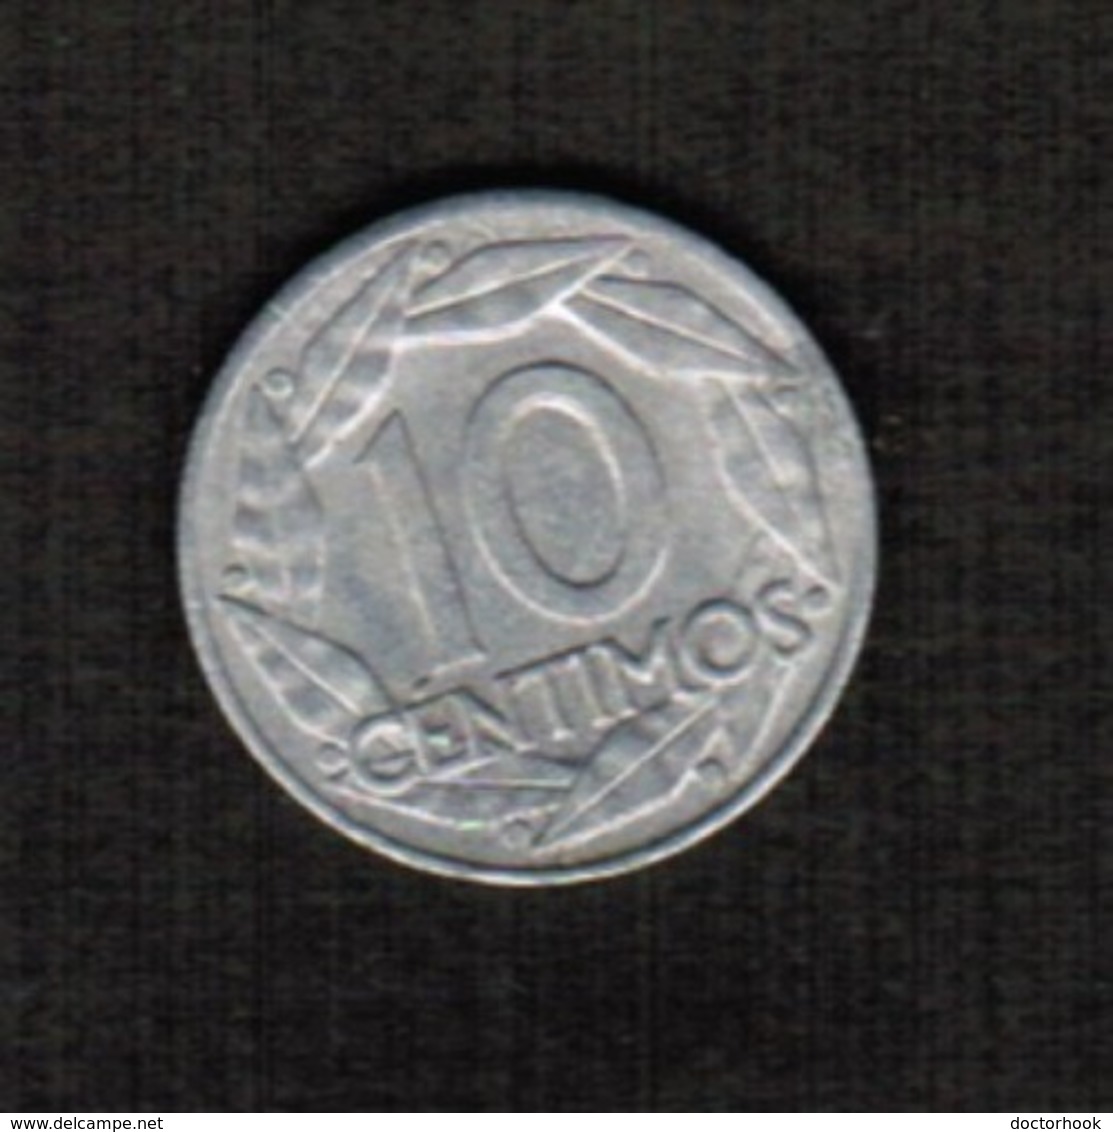 SPAIN  10 CENTIMOS 1959 (KM # 790) #5295 - 10 Centimos